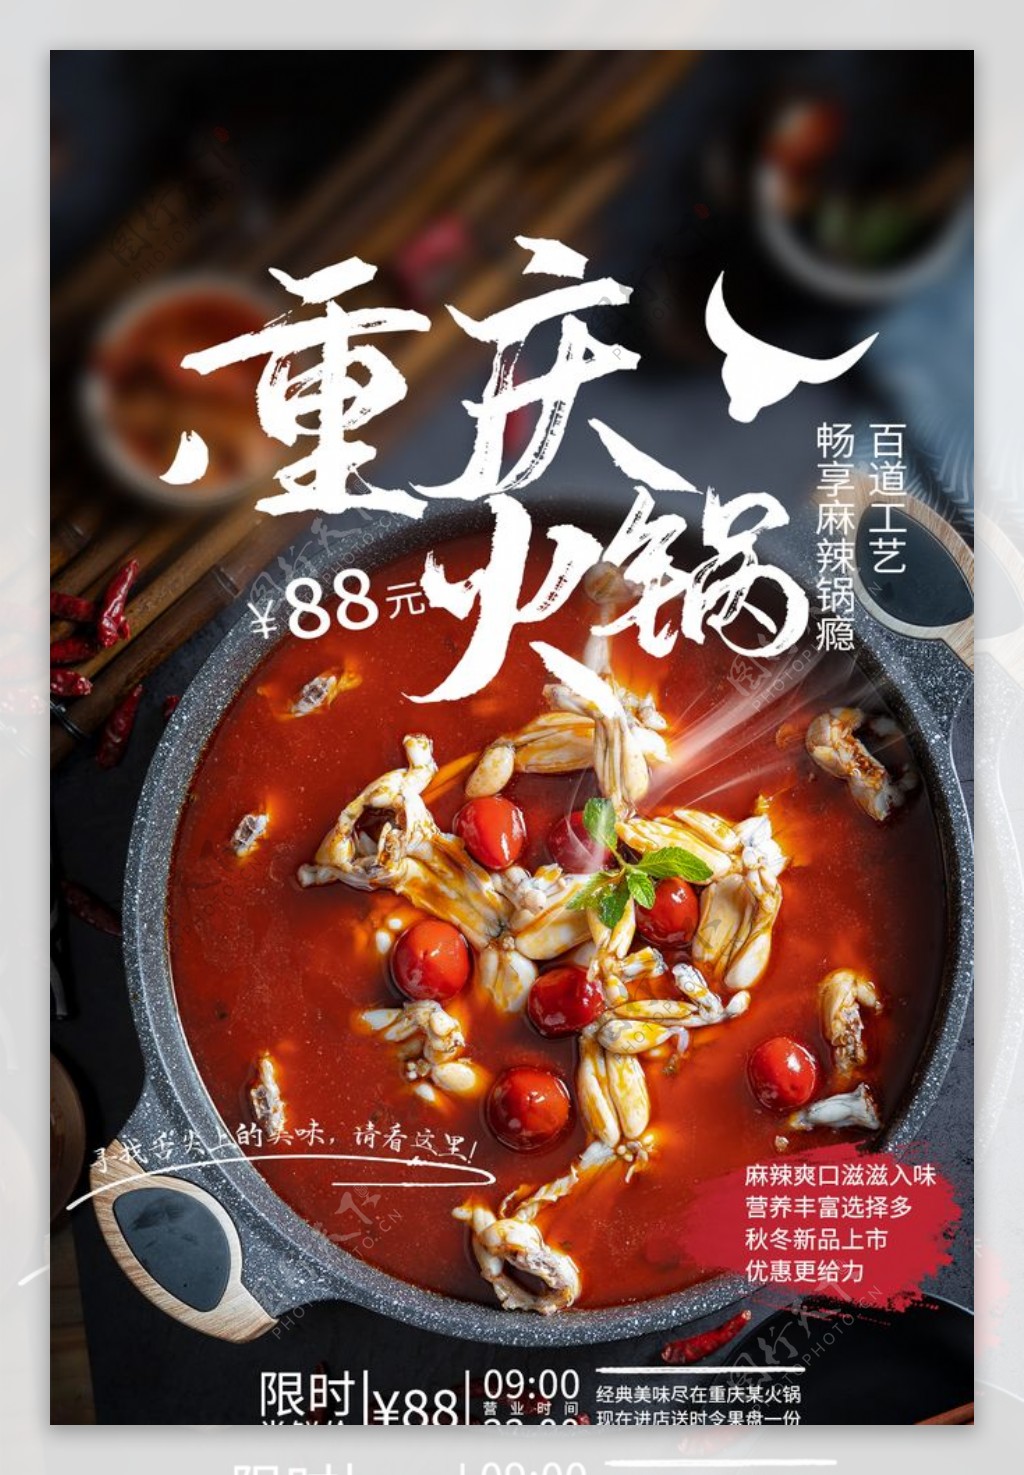 重庆火锅美食食材活动海报素材